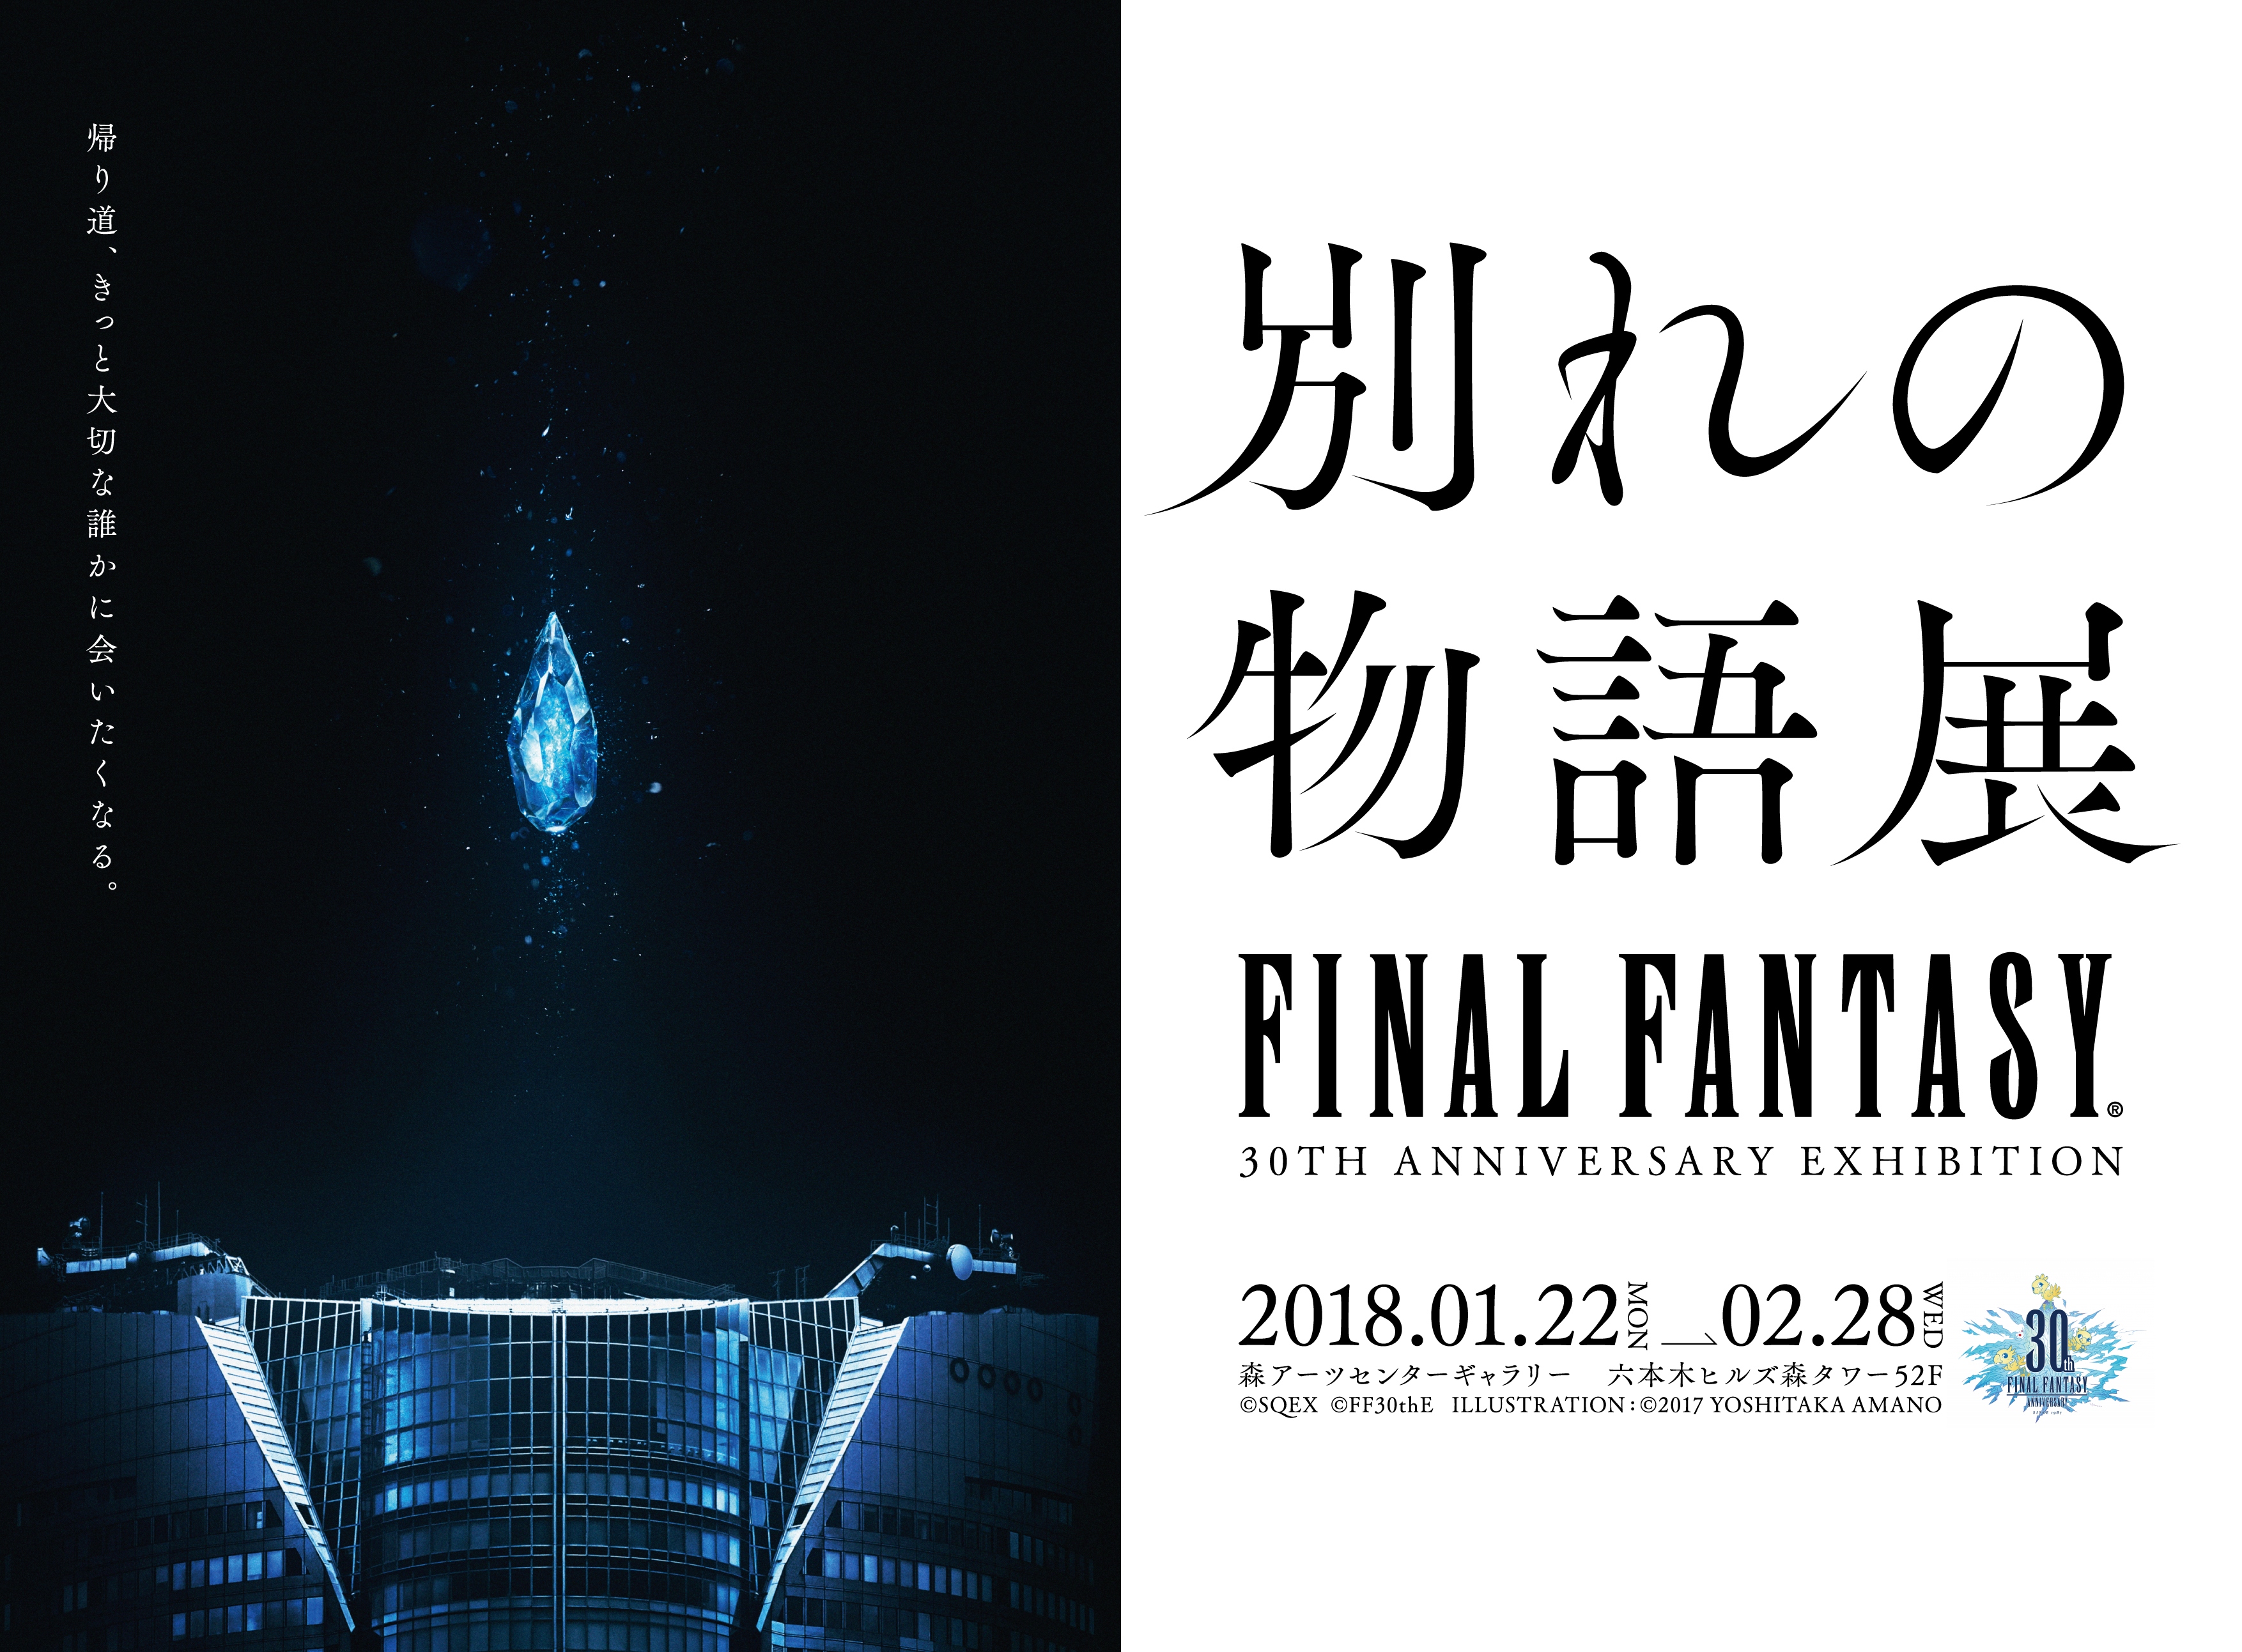 新開発の音声arシステムを導入 ファイナルファンタジー30年の歴史を 別れ で括る大規模回顧展 Final Fantasy 30th Anniversary Exhibition 別れの物語展 株式会社スクウェア エニックスのプレスリリース